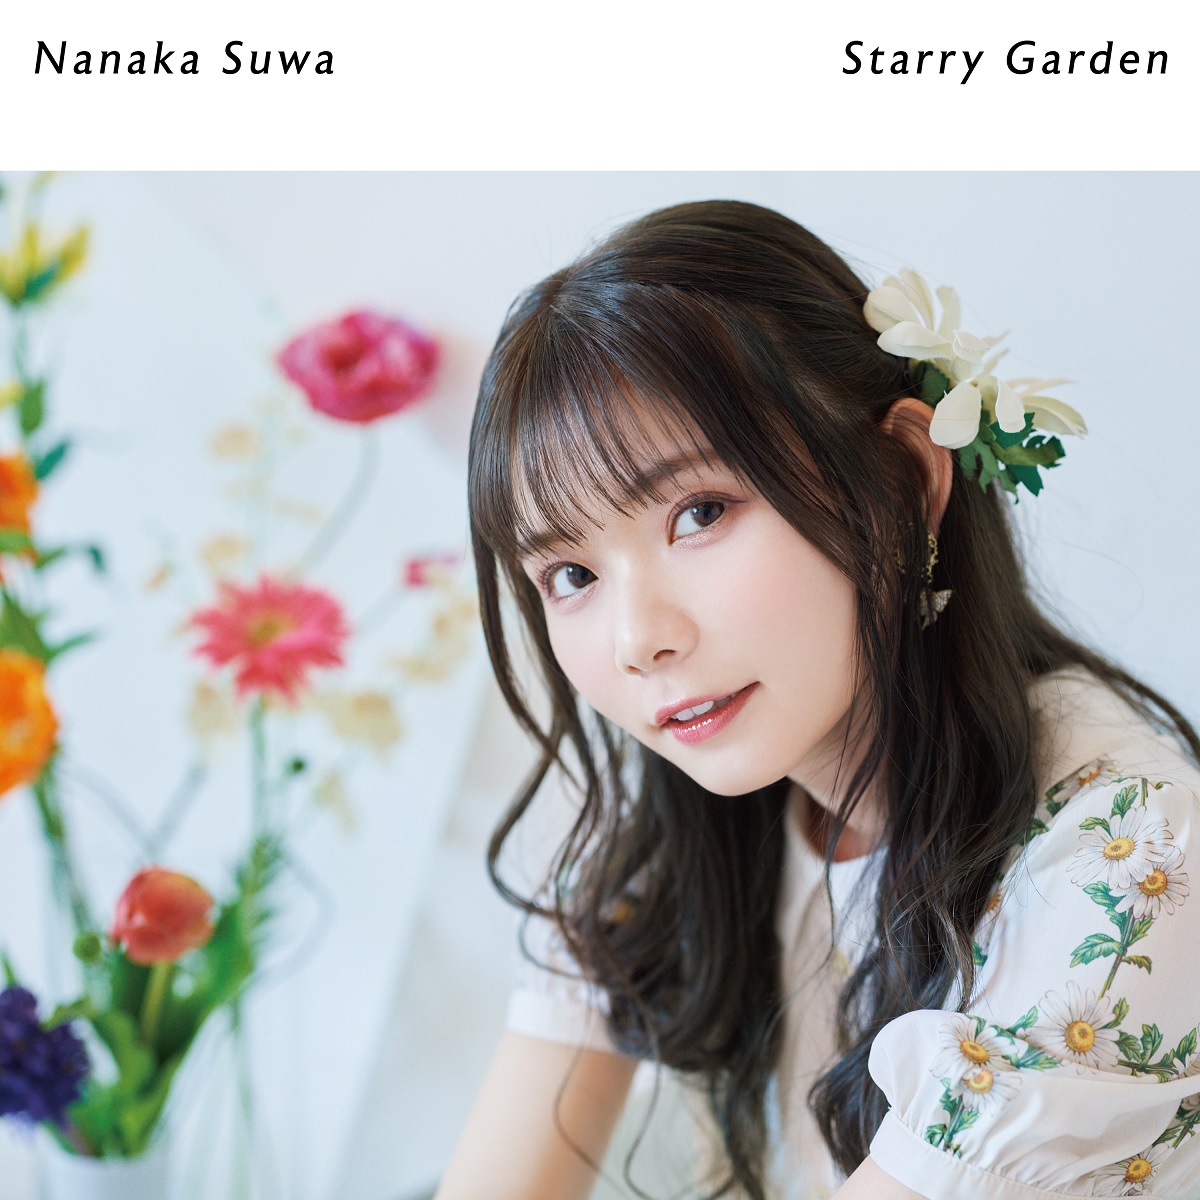 Cover art for『Nanaka Suwa - Atashi Biyori』from the release『Starry Garden』